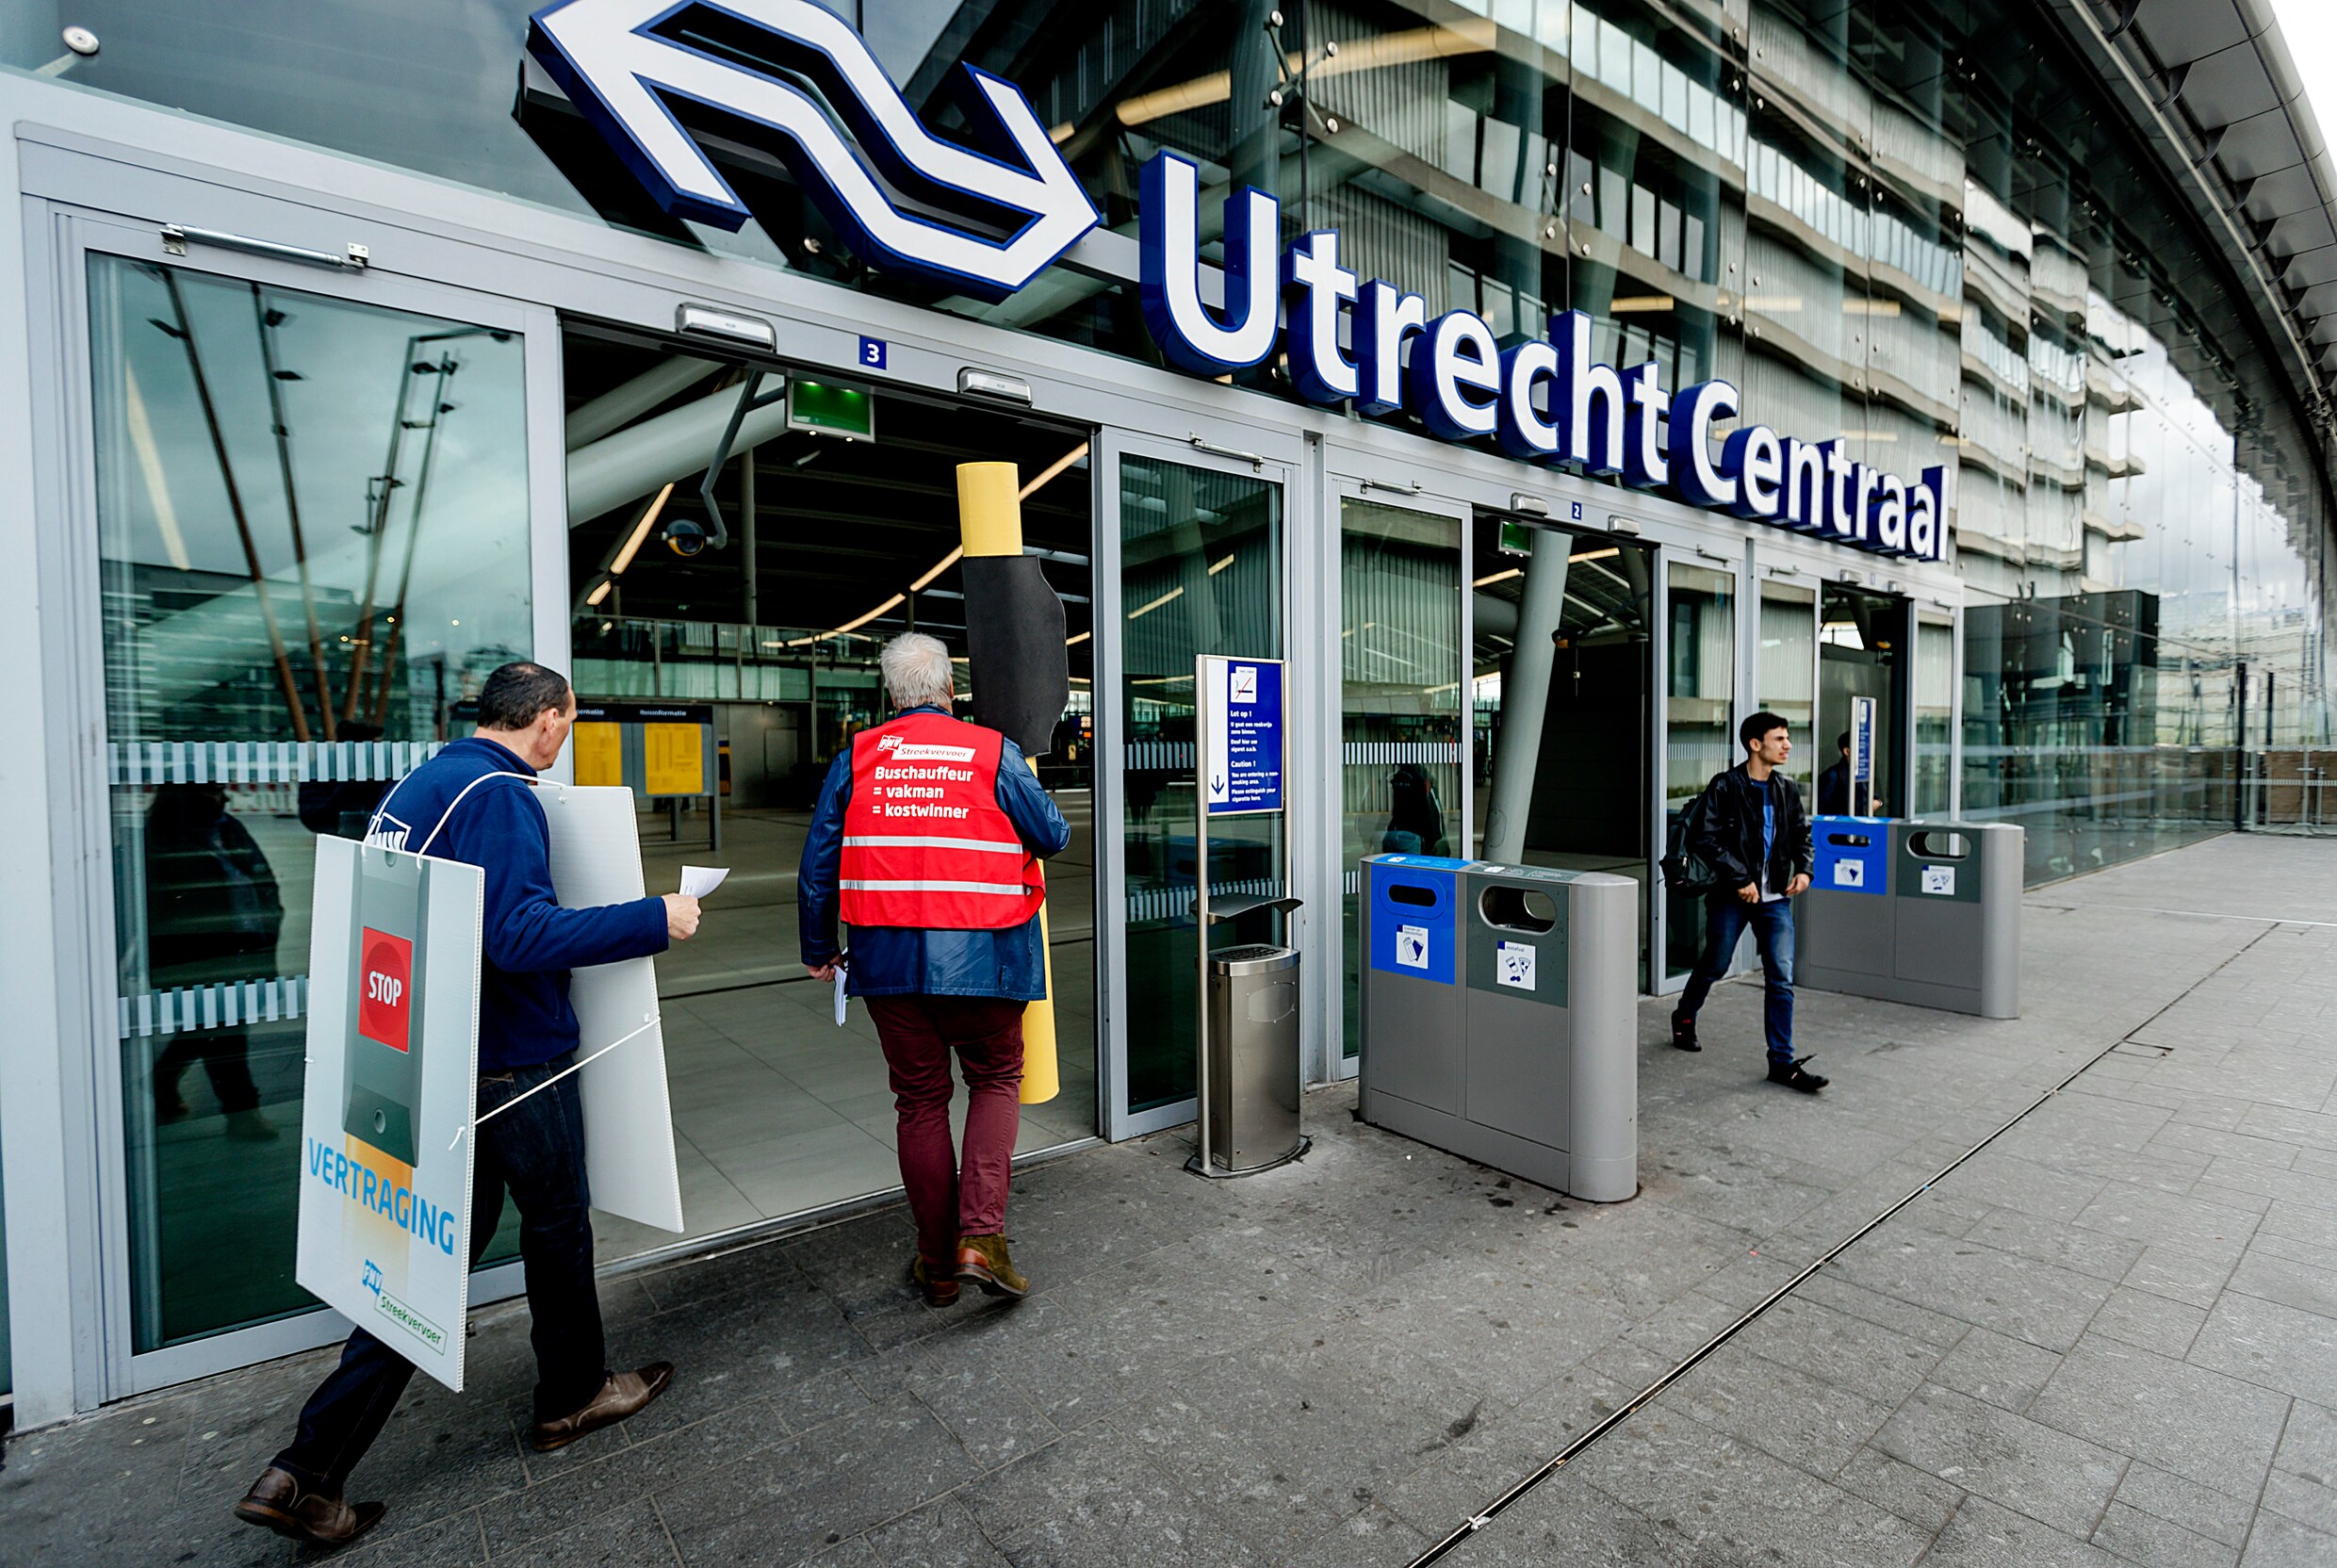 Utrecht wil nieuw intercitystation en extra bus- of tramlijn om verwachte bevolkingsgroei aan te kunnen